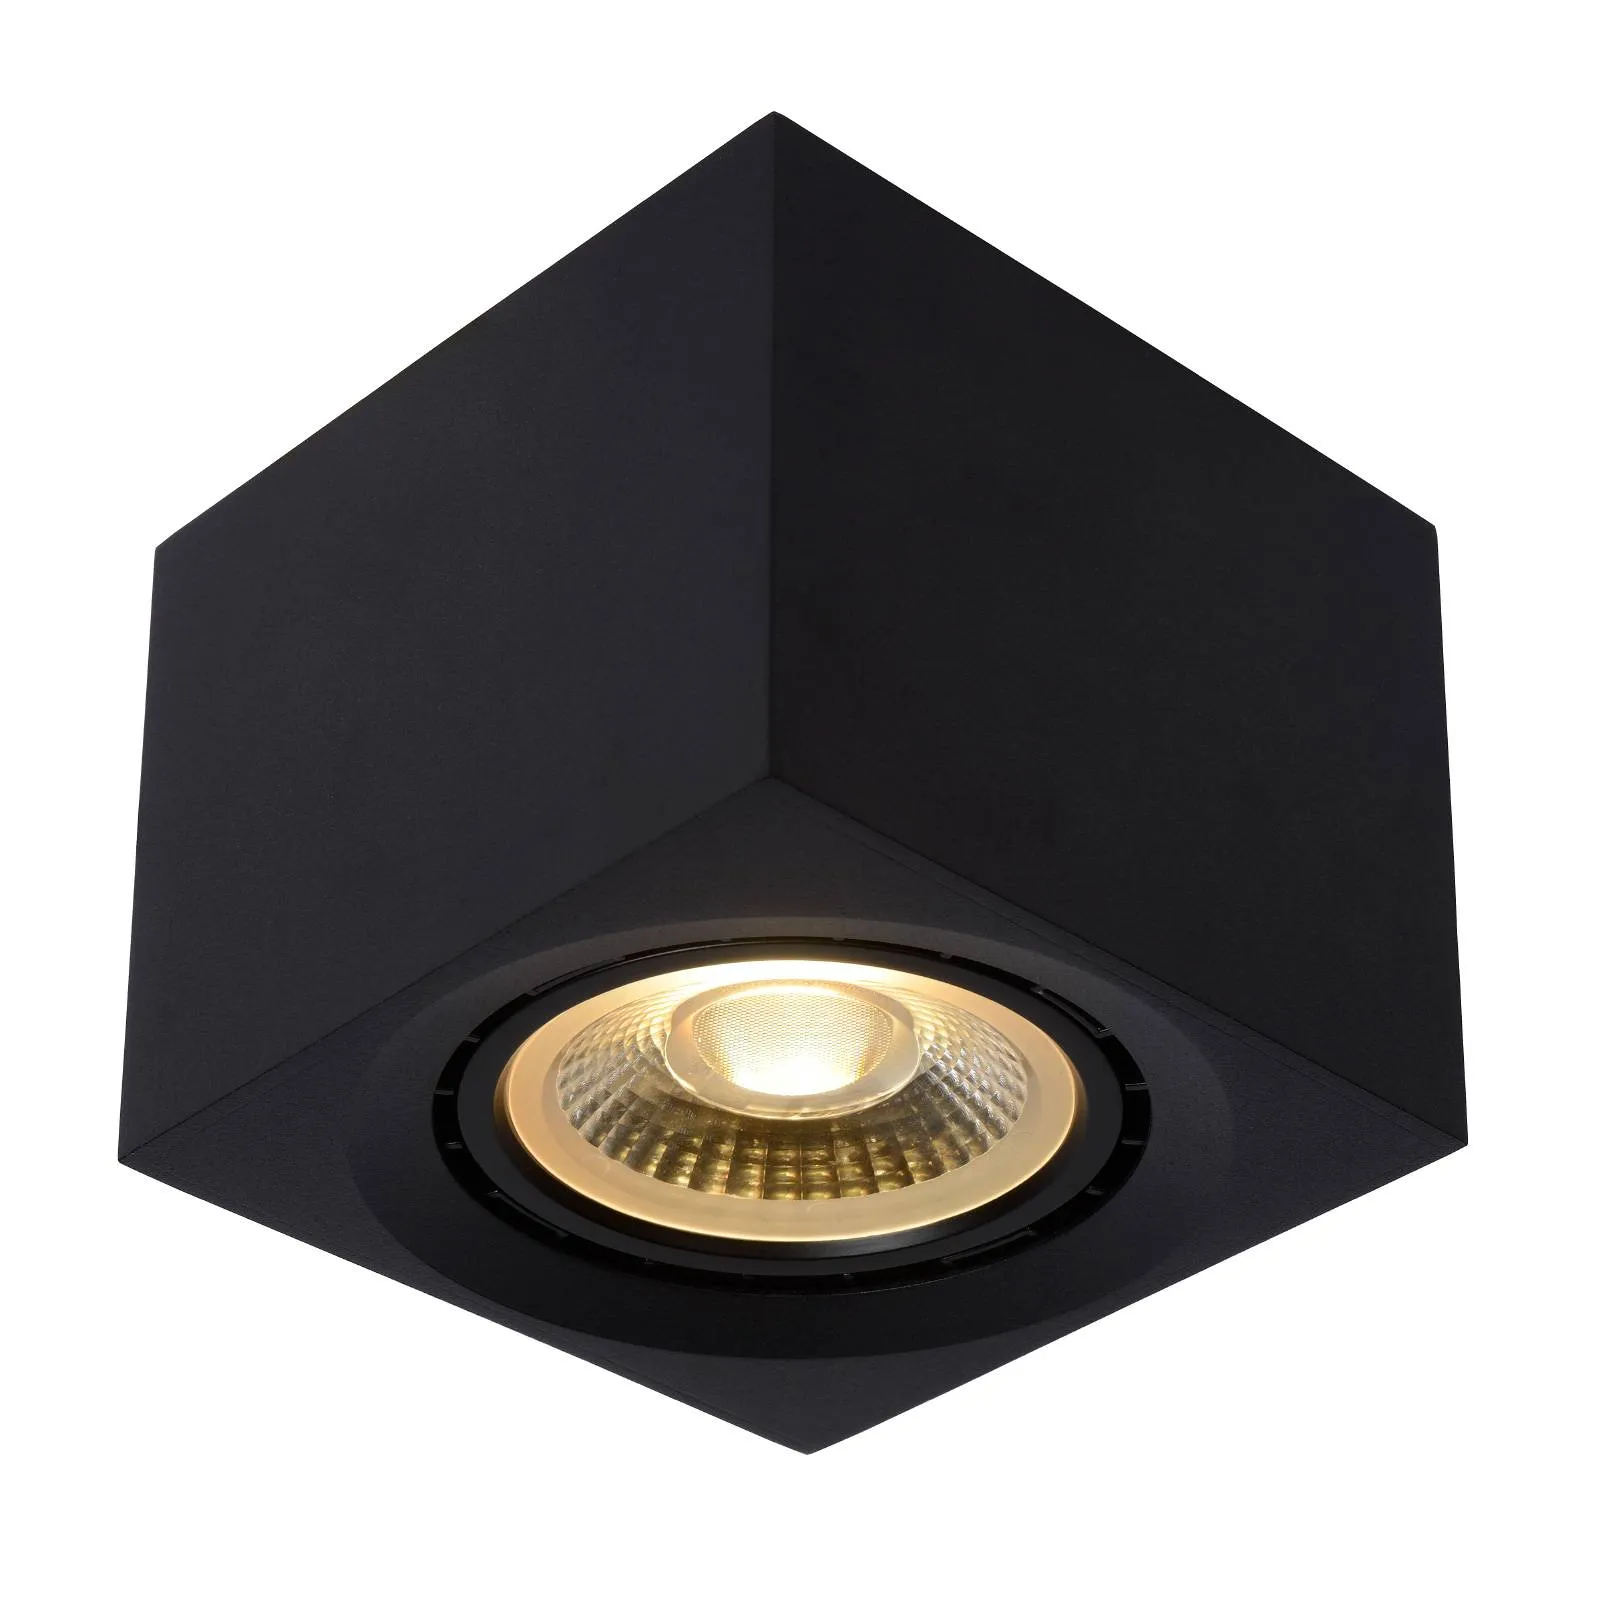 Fedler LED ceiling spotlight angular black